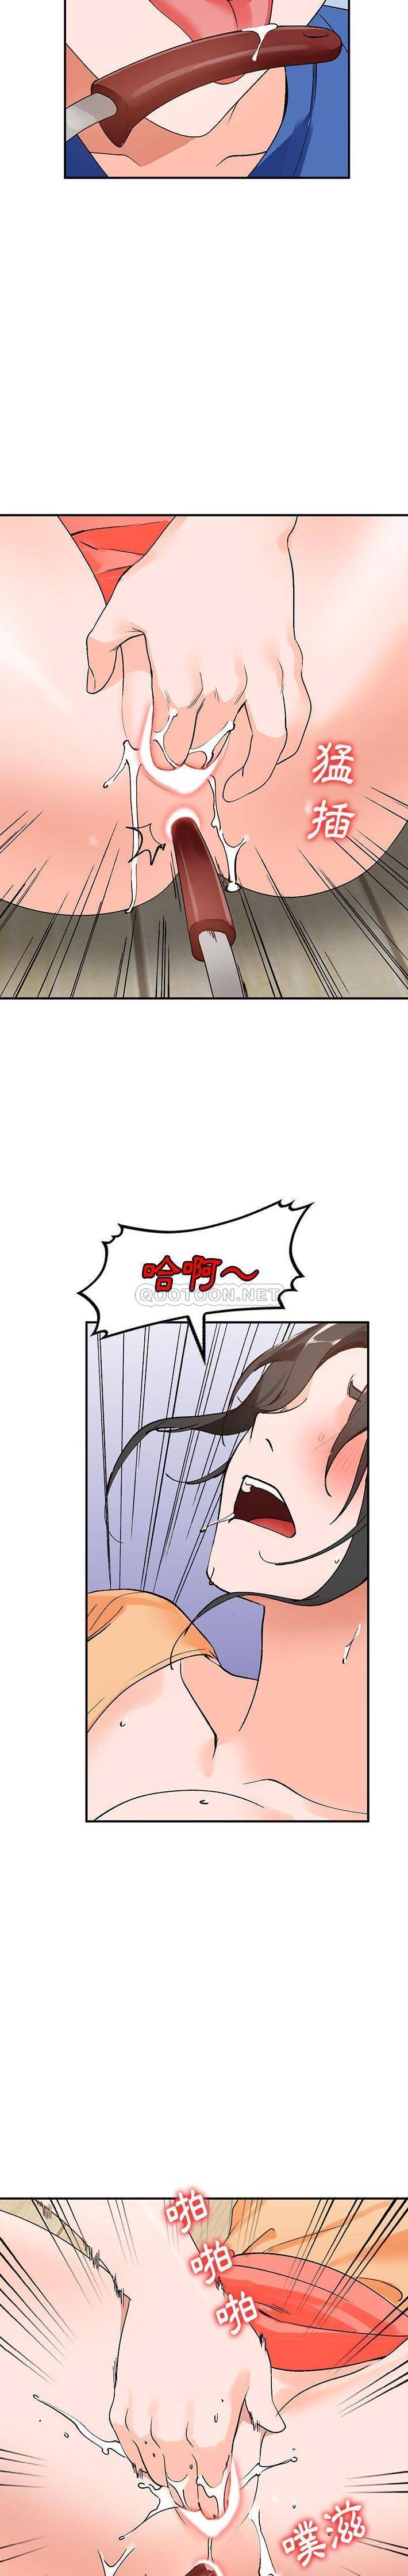 韩国污漫画 她們的小秘密(小鎮上的女人們) 第10话 19